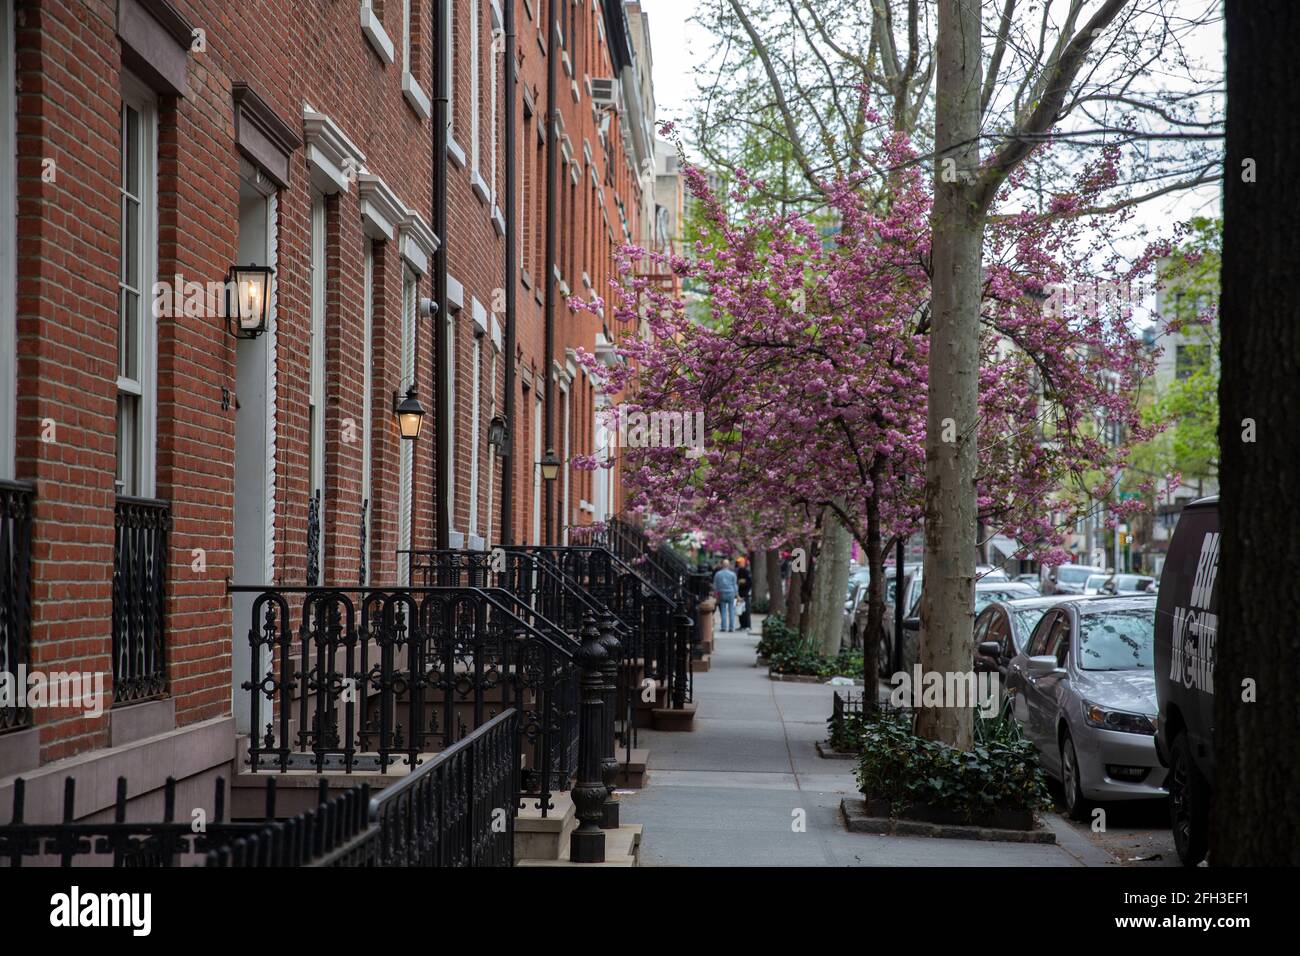 New York - 18 2021 avril : une rangée de bâtiments en grès brun avec lampe à gaz à chaque entrée de Manhattan, New York. Printemps avec arbre en fleurs dedans Banque D'Images